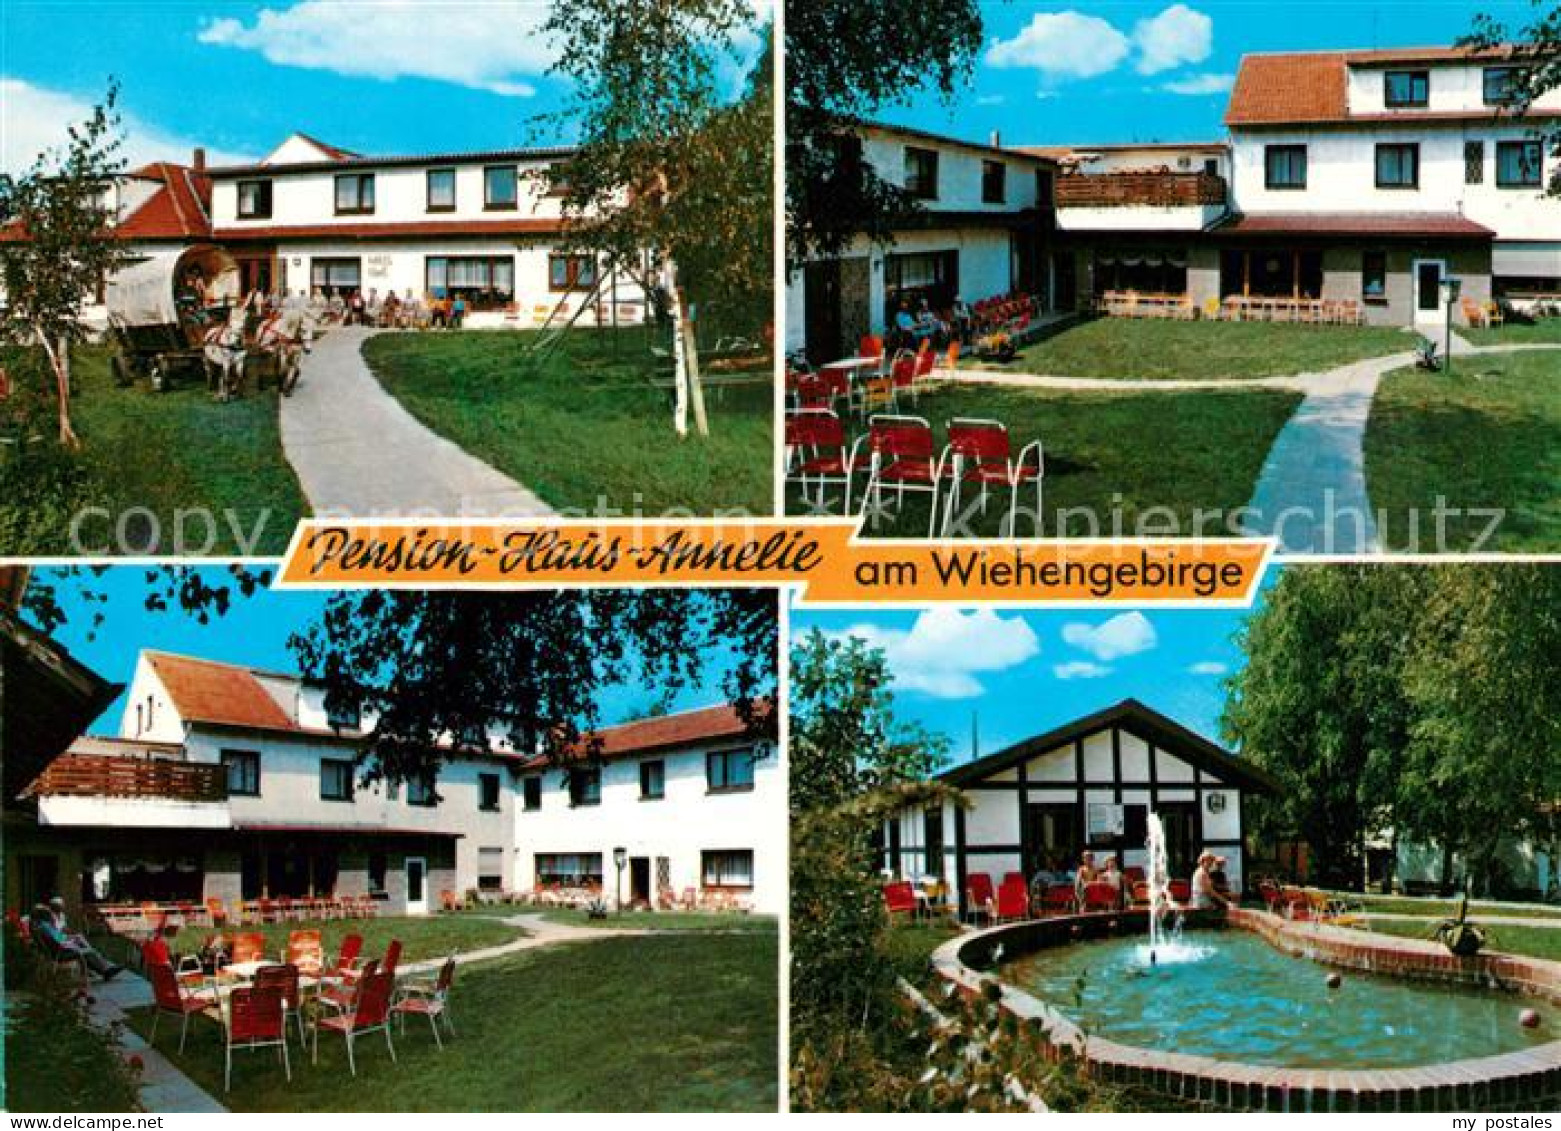 73204468 Bad Holzhausen Luebbecke Pension Haus Annelie Am Wiehengebirge Garten T - Getmold